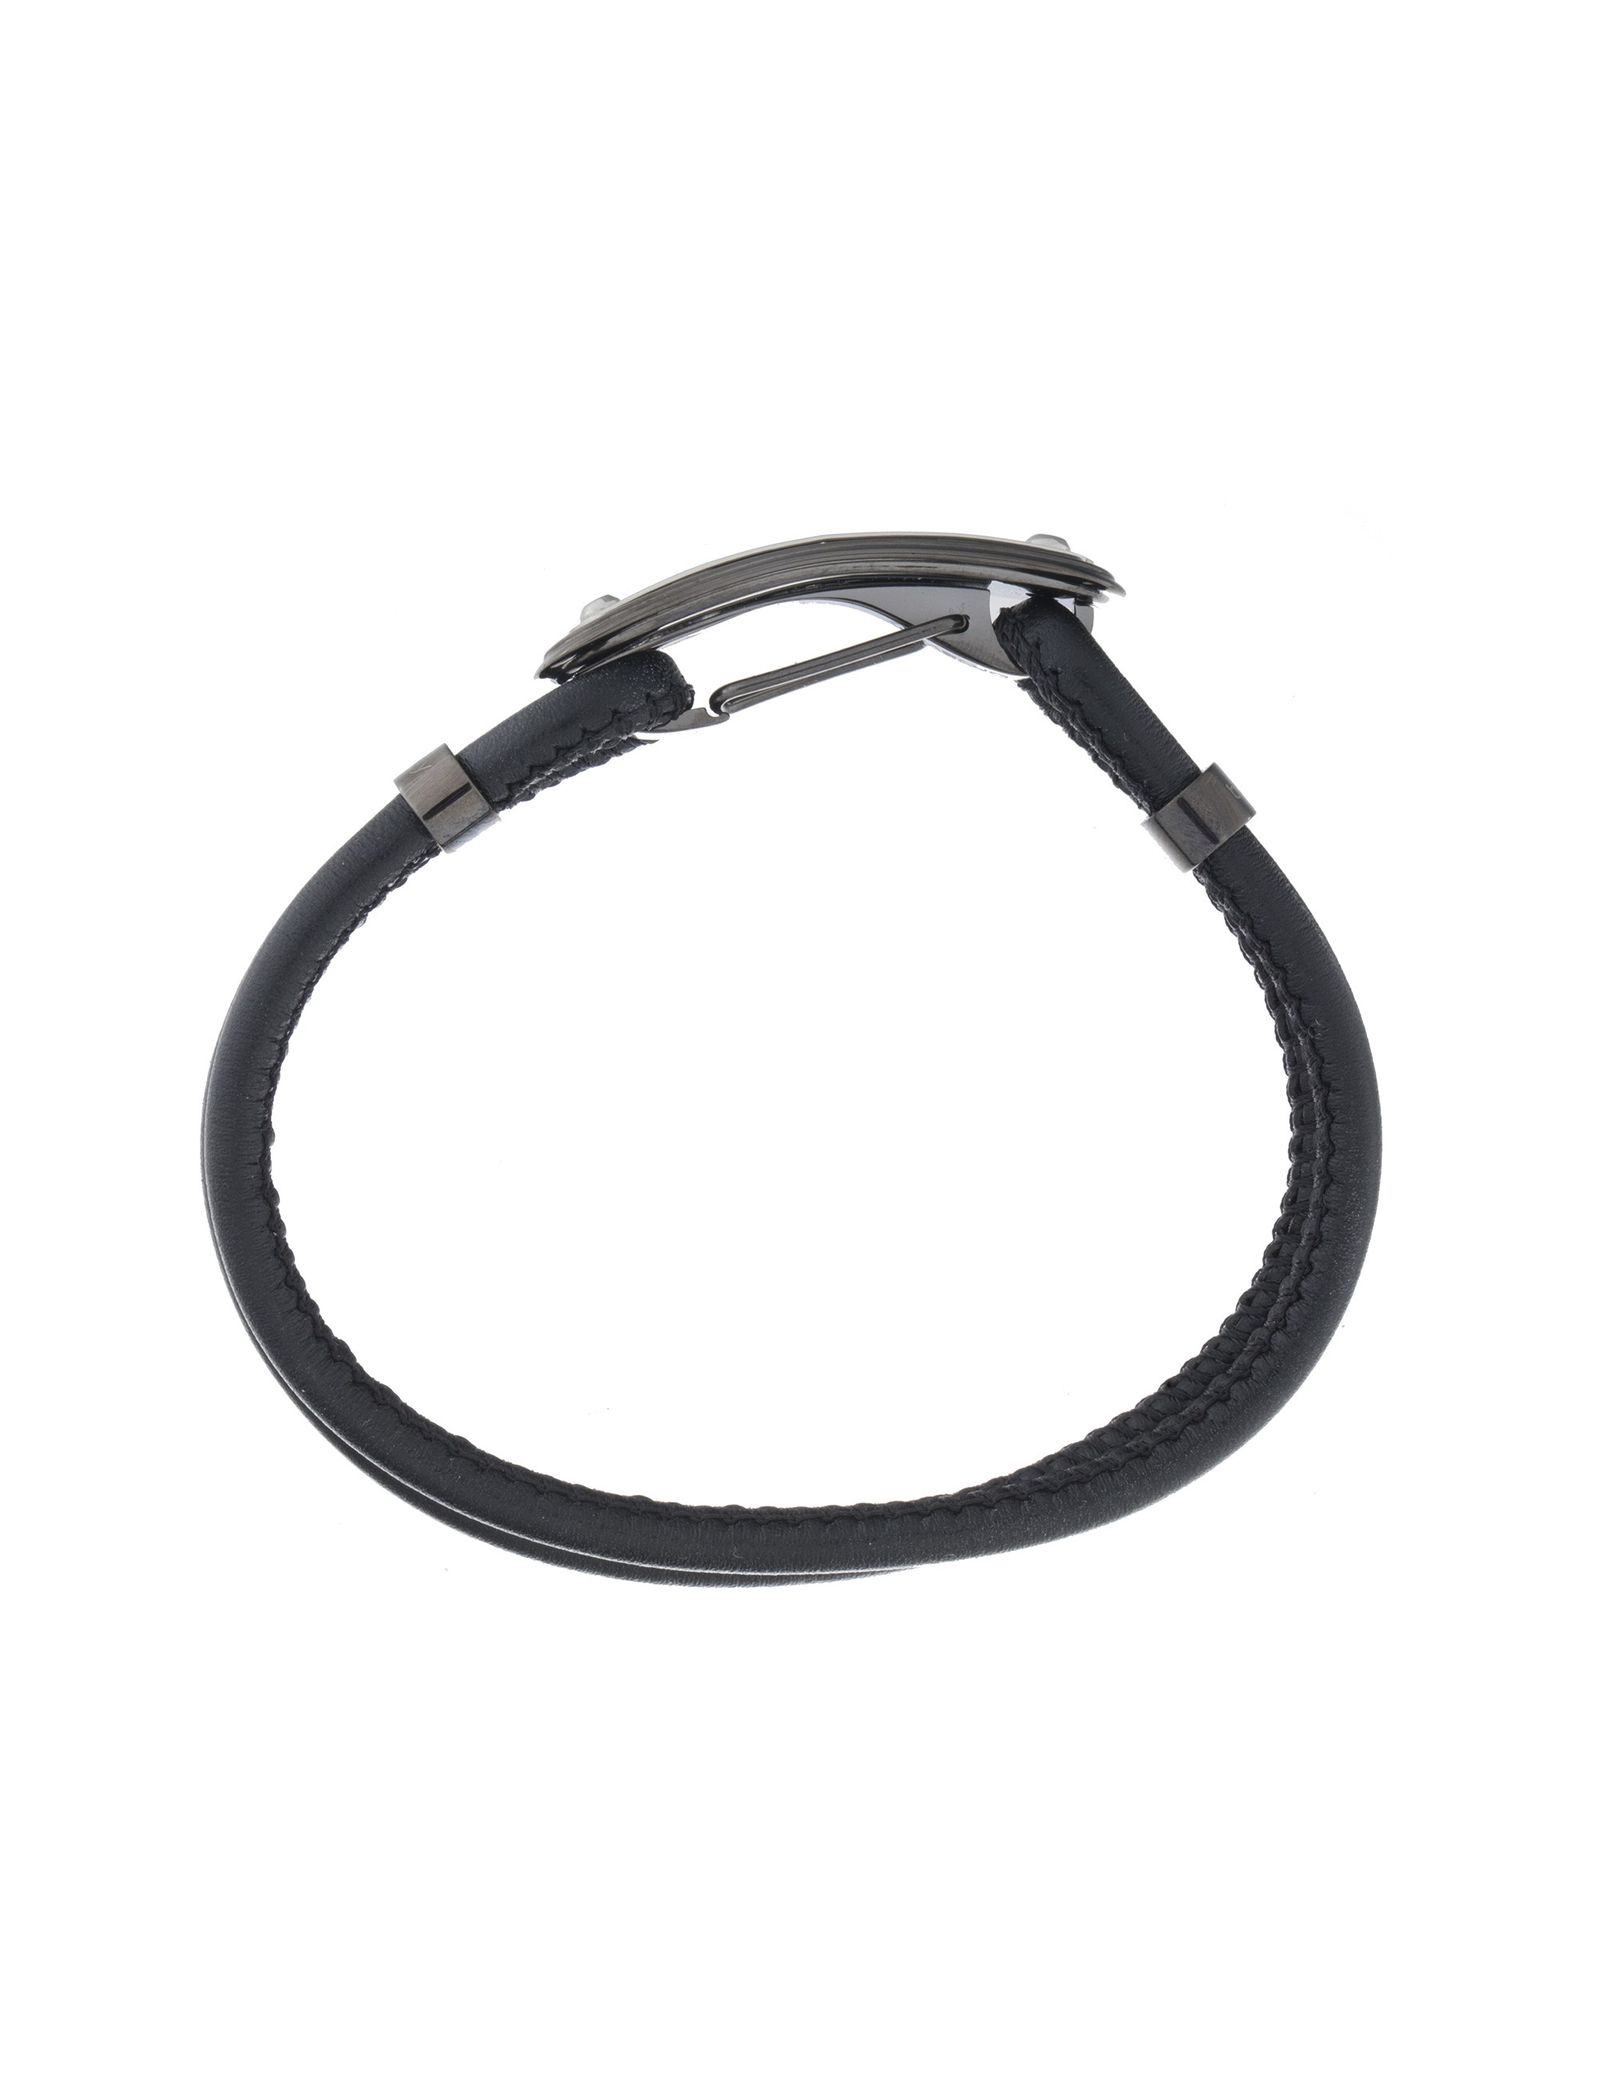 دستبند چرمی مردانه - برازوی - Black - 4